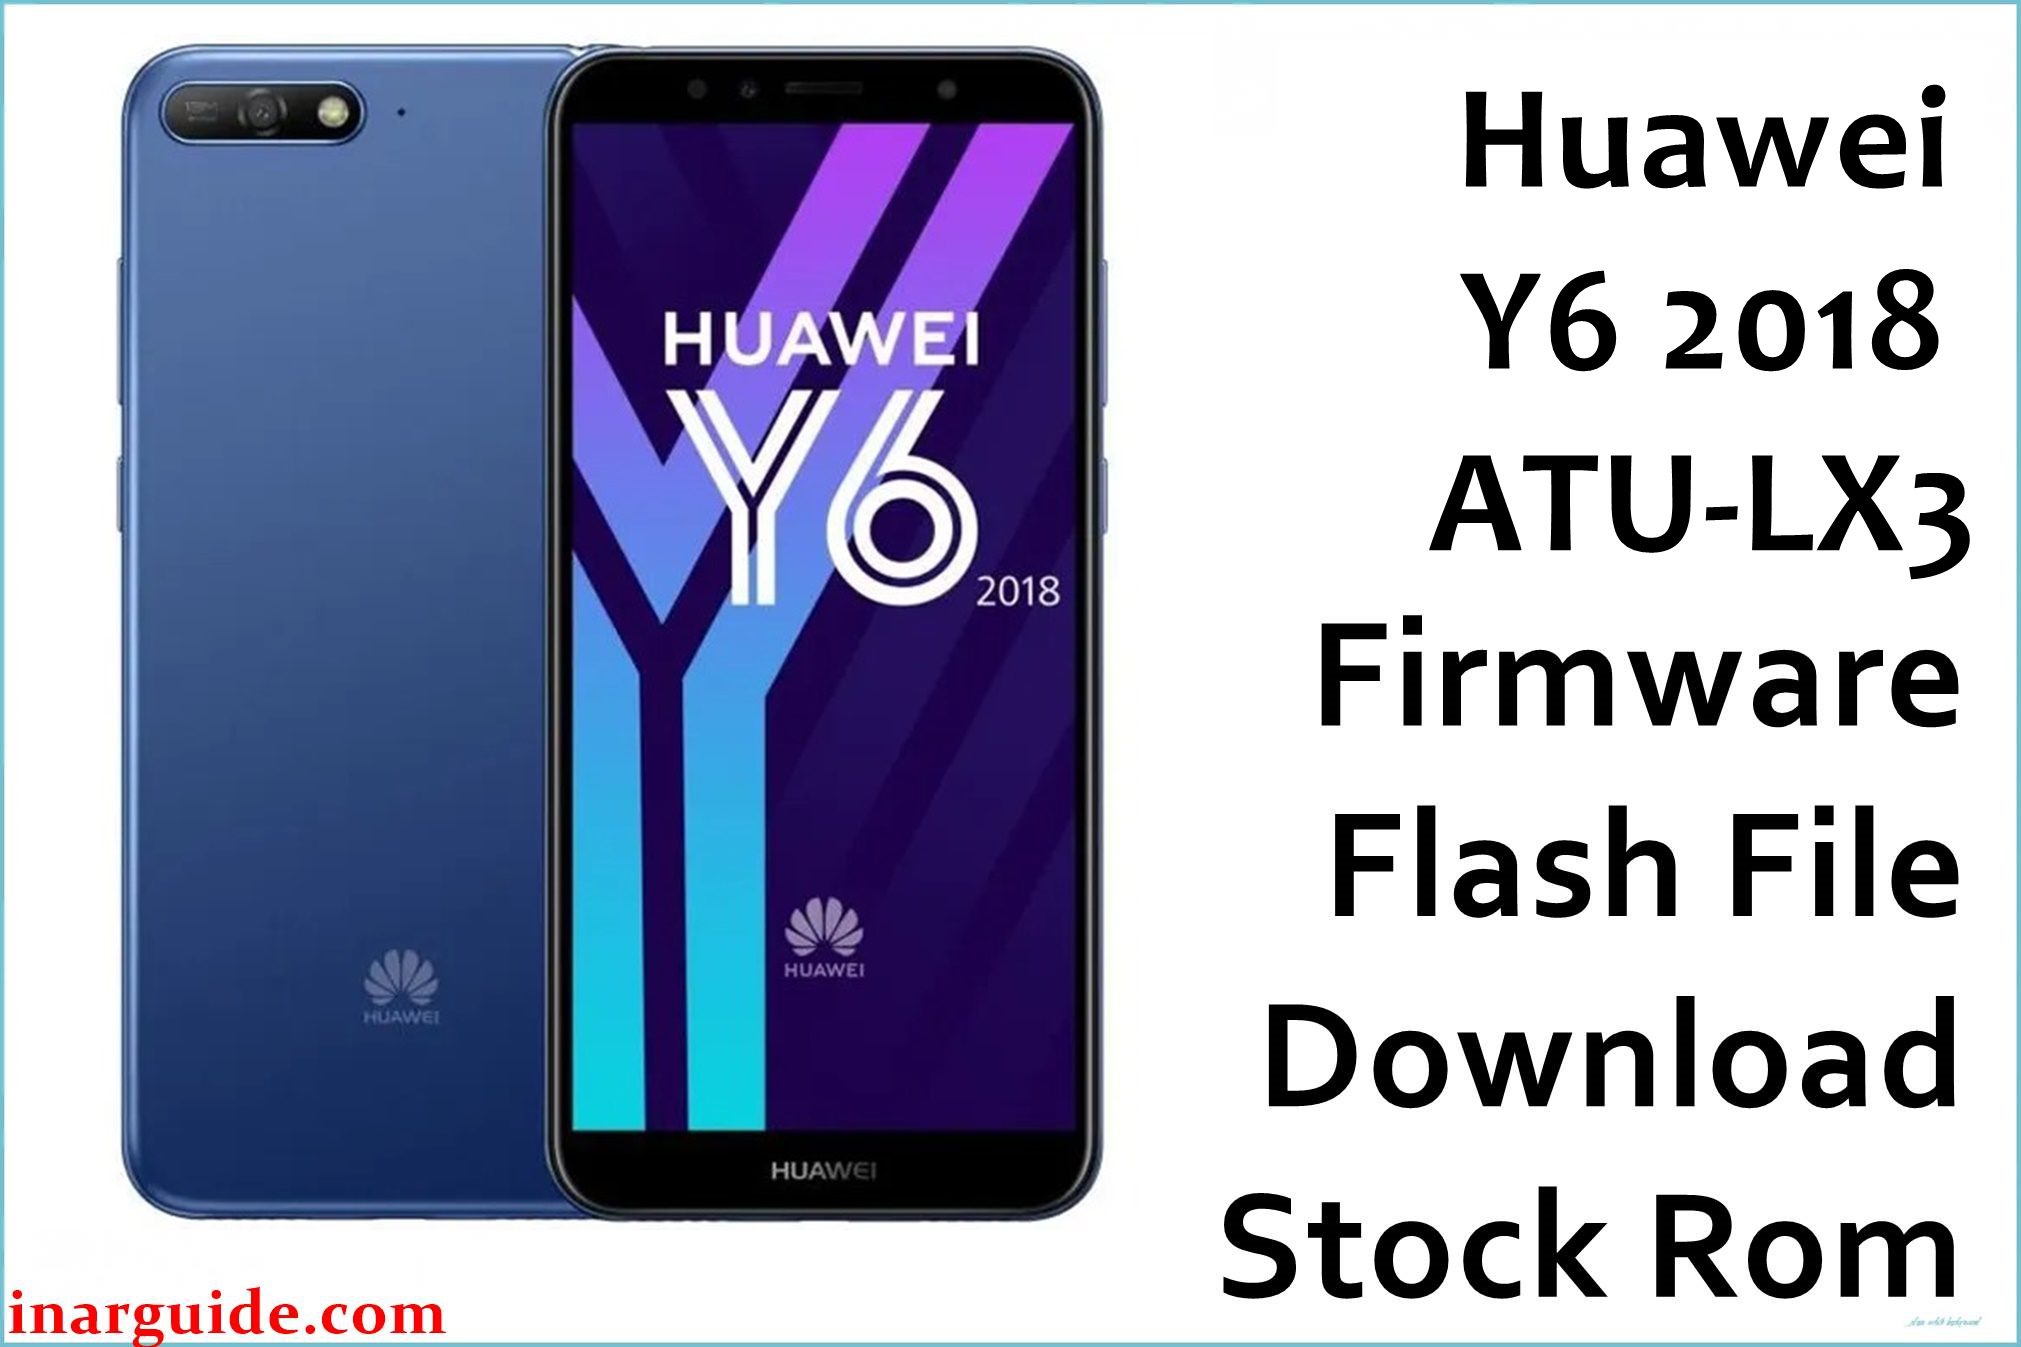 Huawei Y6 2018 ATU LX3